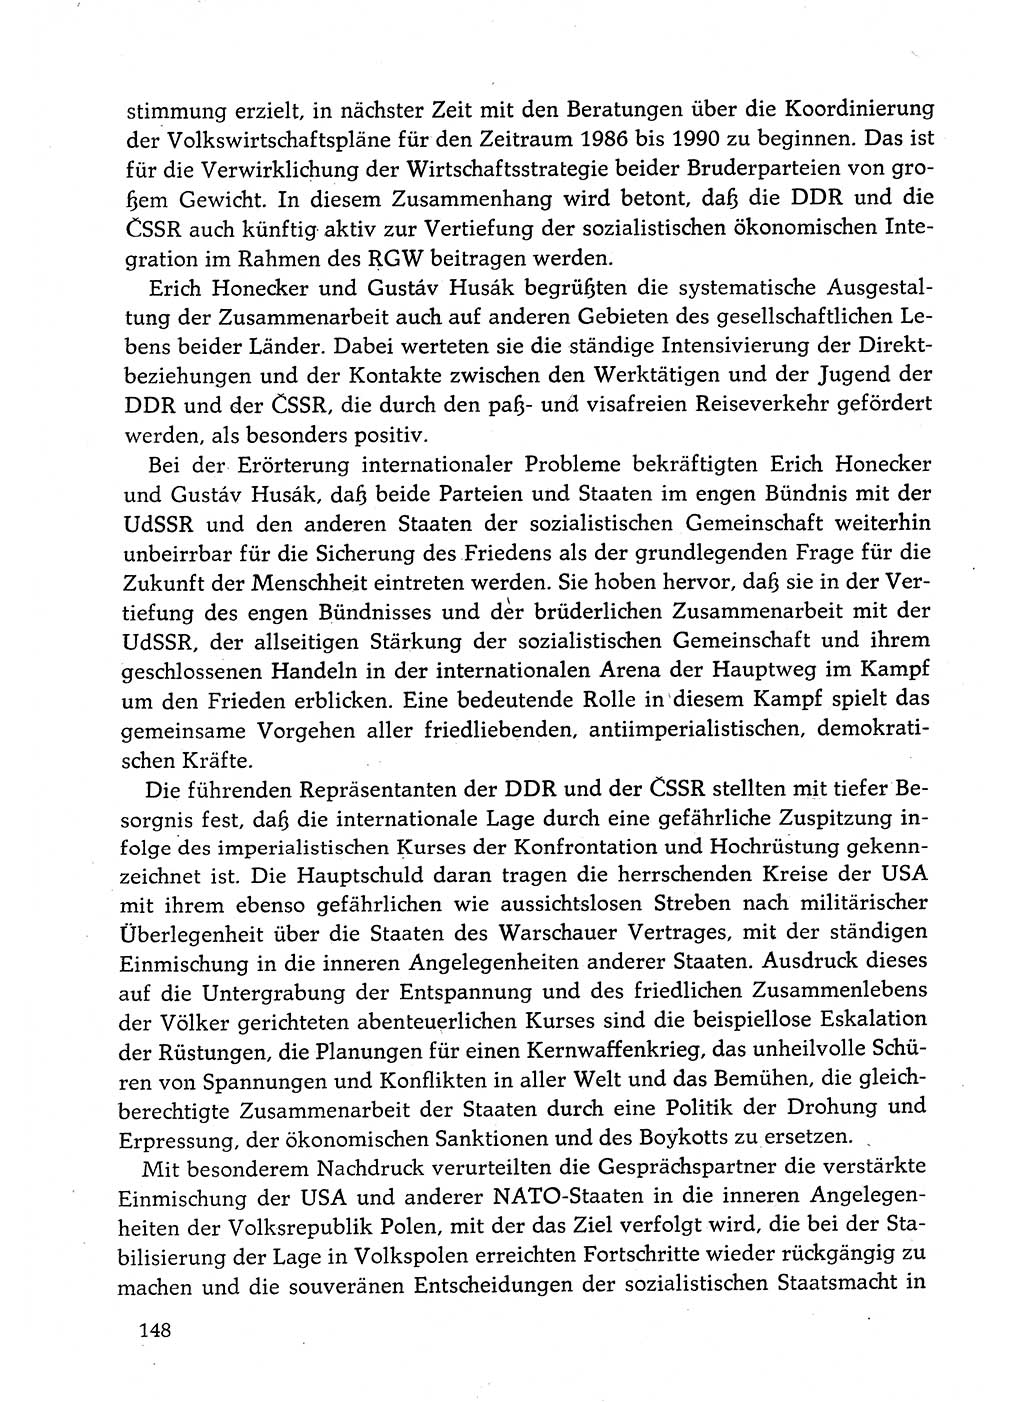 Dokumente der Sozialistischen Einheitspartei Deutschlands (SED) [Deutsche Demokratische Republik (DDR)] 1982-1983, Seite 148 (Dok. SED DDR 1982-1983, S. 148)